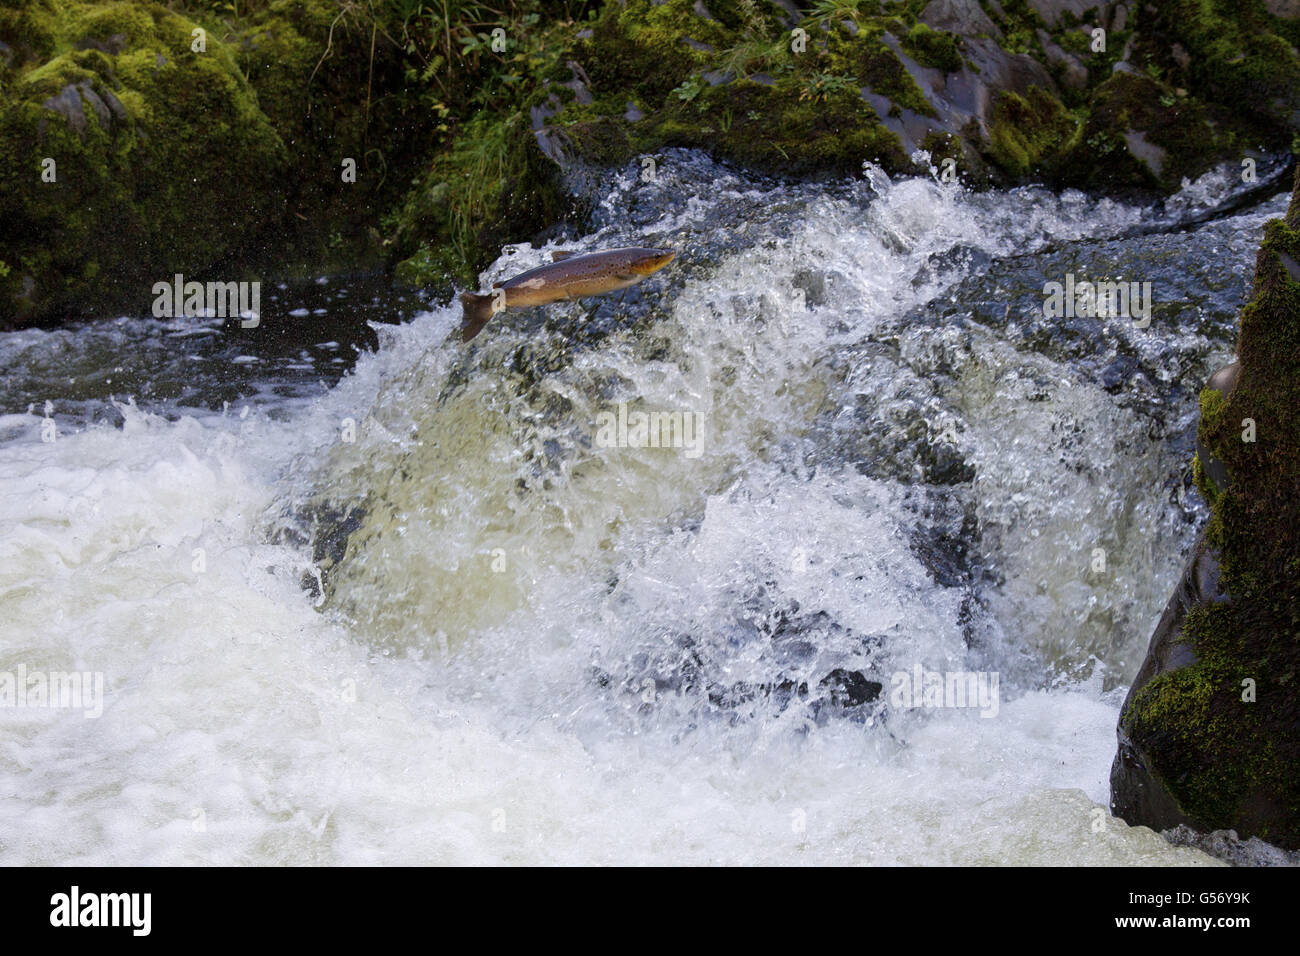 Trota di mare (Salmo trutta trutta) adulto, saltando fino alla cascata, spostando a monte di vivaio, Fiume Whiteadder, Berwickshire, Scottish Borders, Scozia, Ottobre Foto Stock